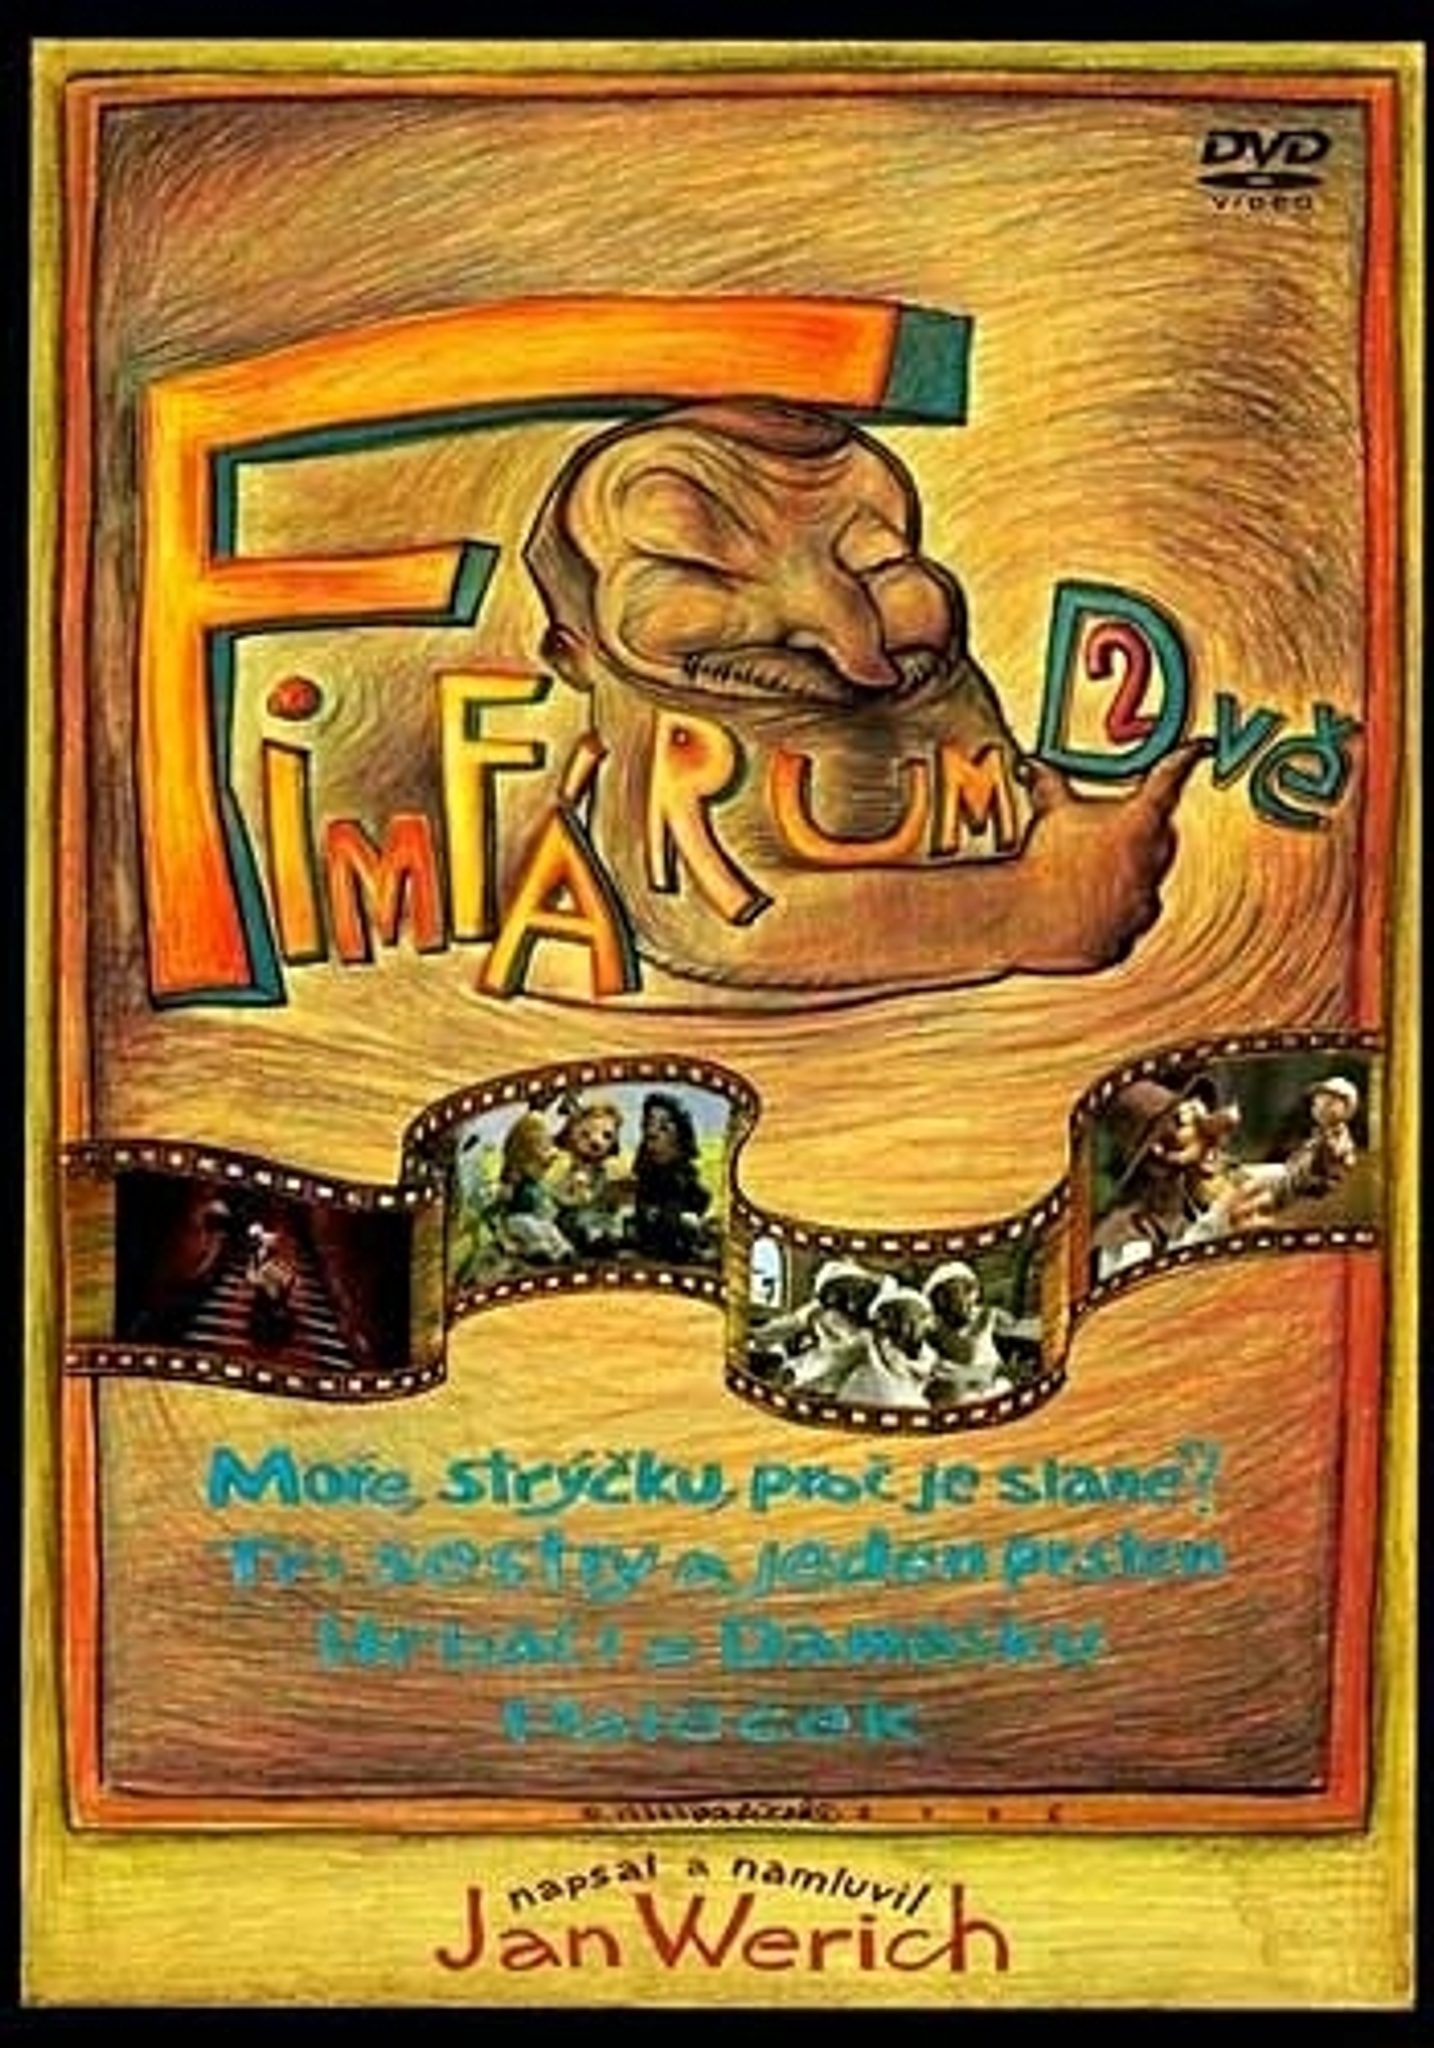 DVD Fimfrum 2